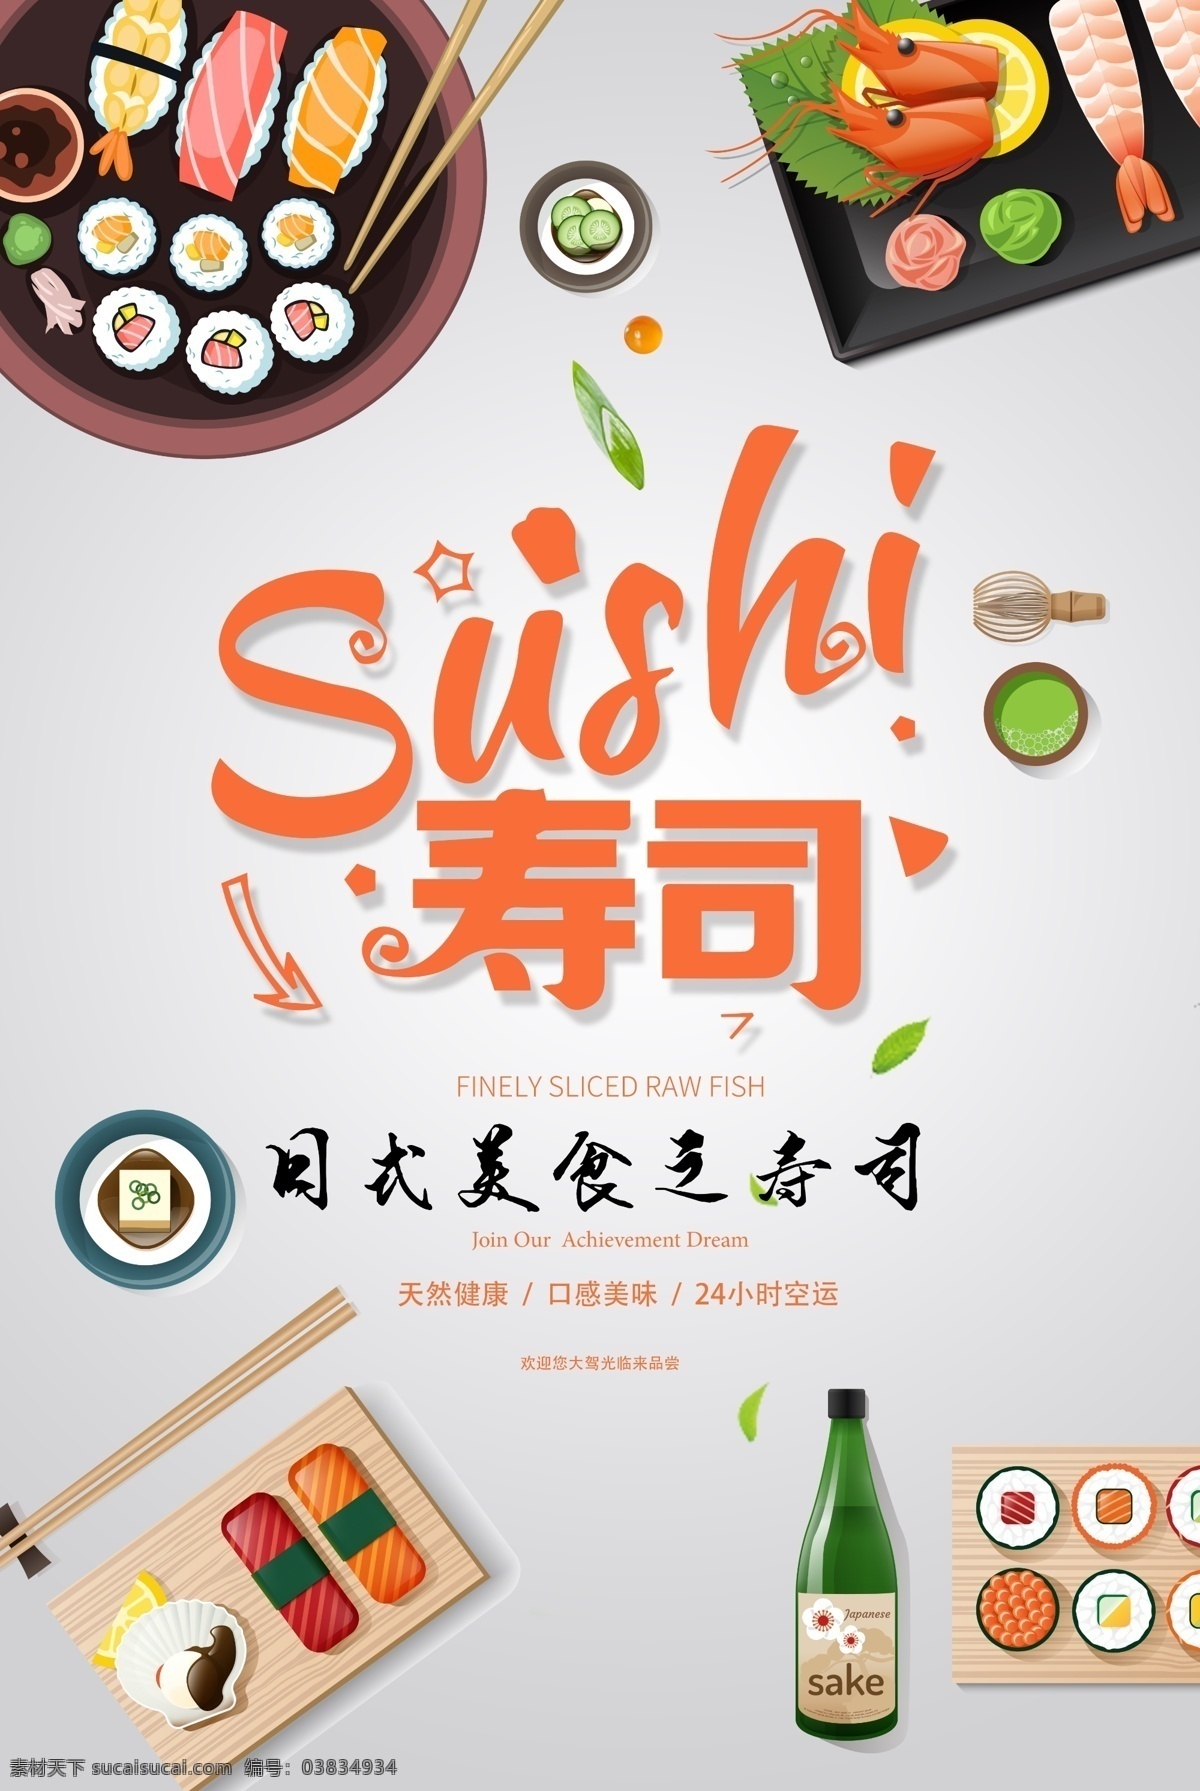 日本 寿司 日 系 风 美食 海报 广告海报设计 食 美食漫画 手绘 pop 美食招贴 美食宣传 美食海报 菜单设计 美食展板 餐饮文化